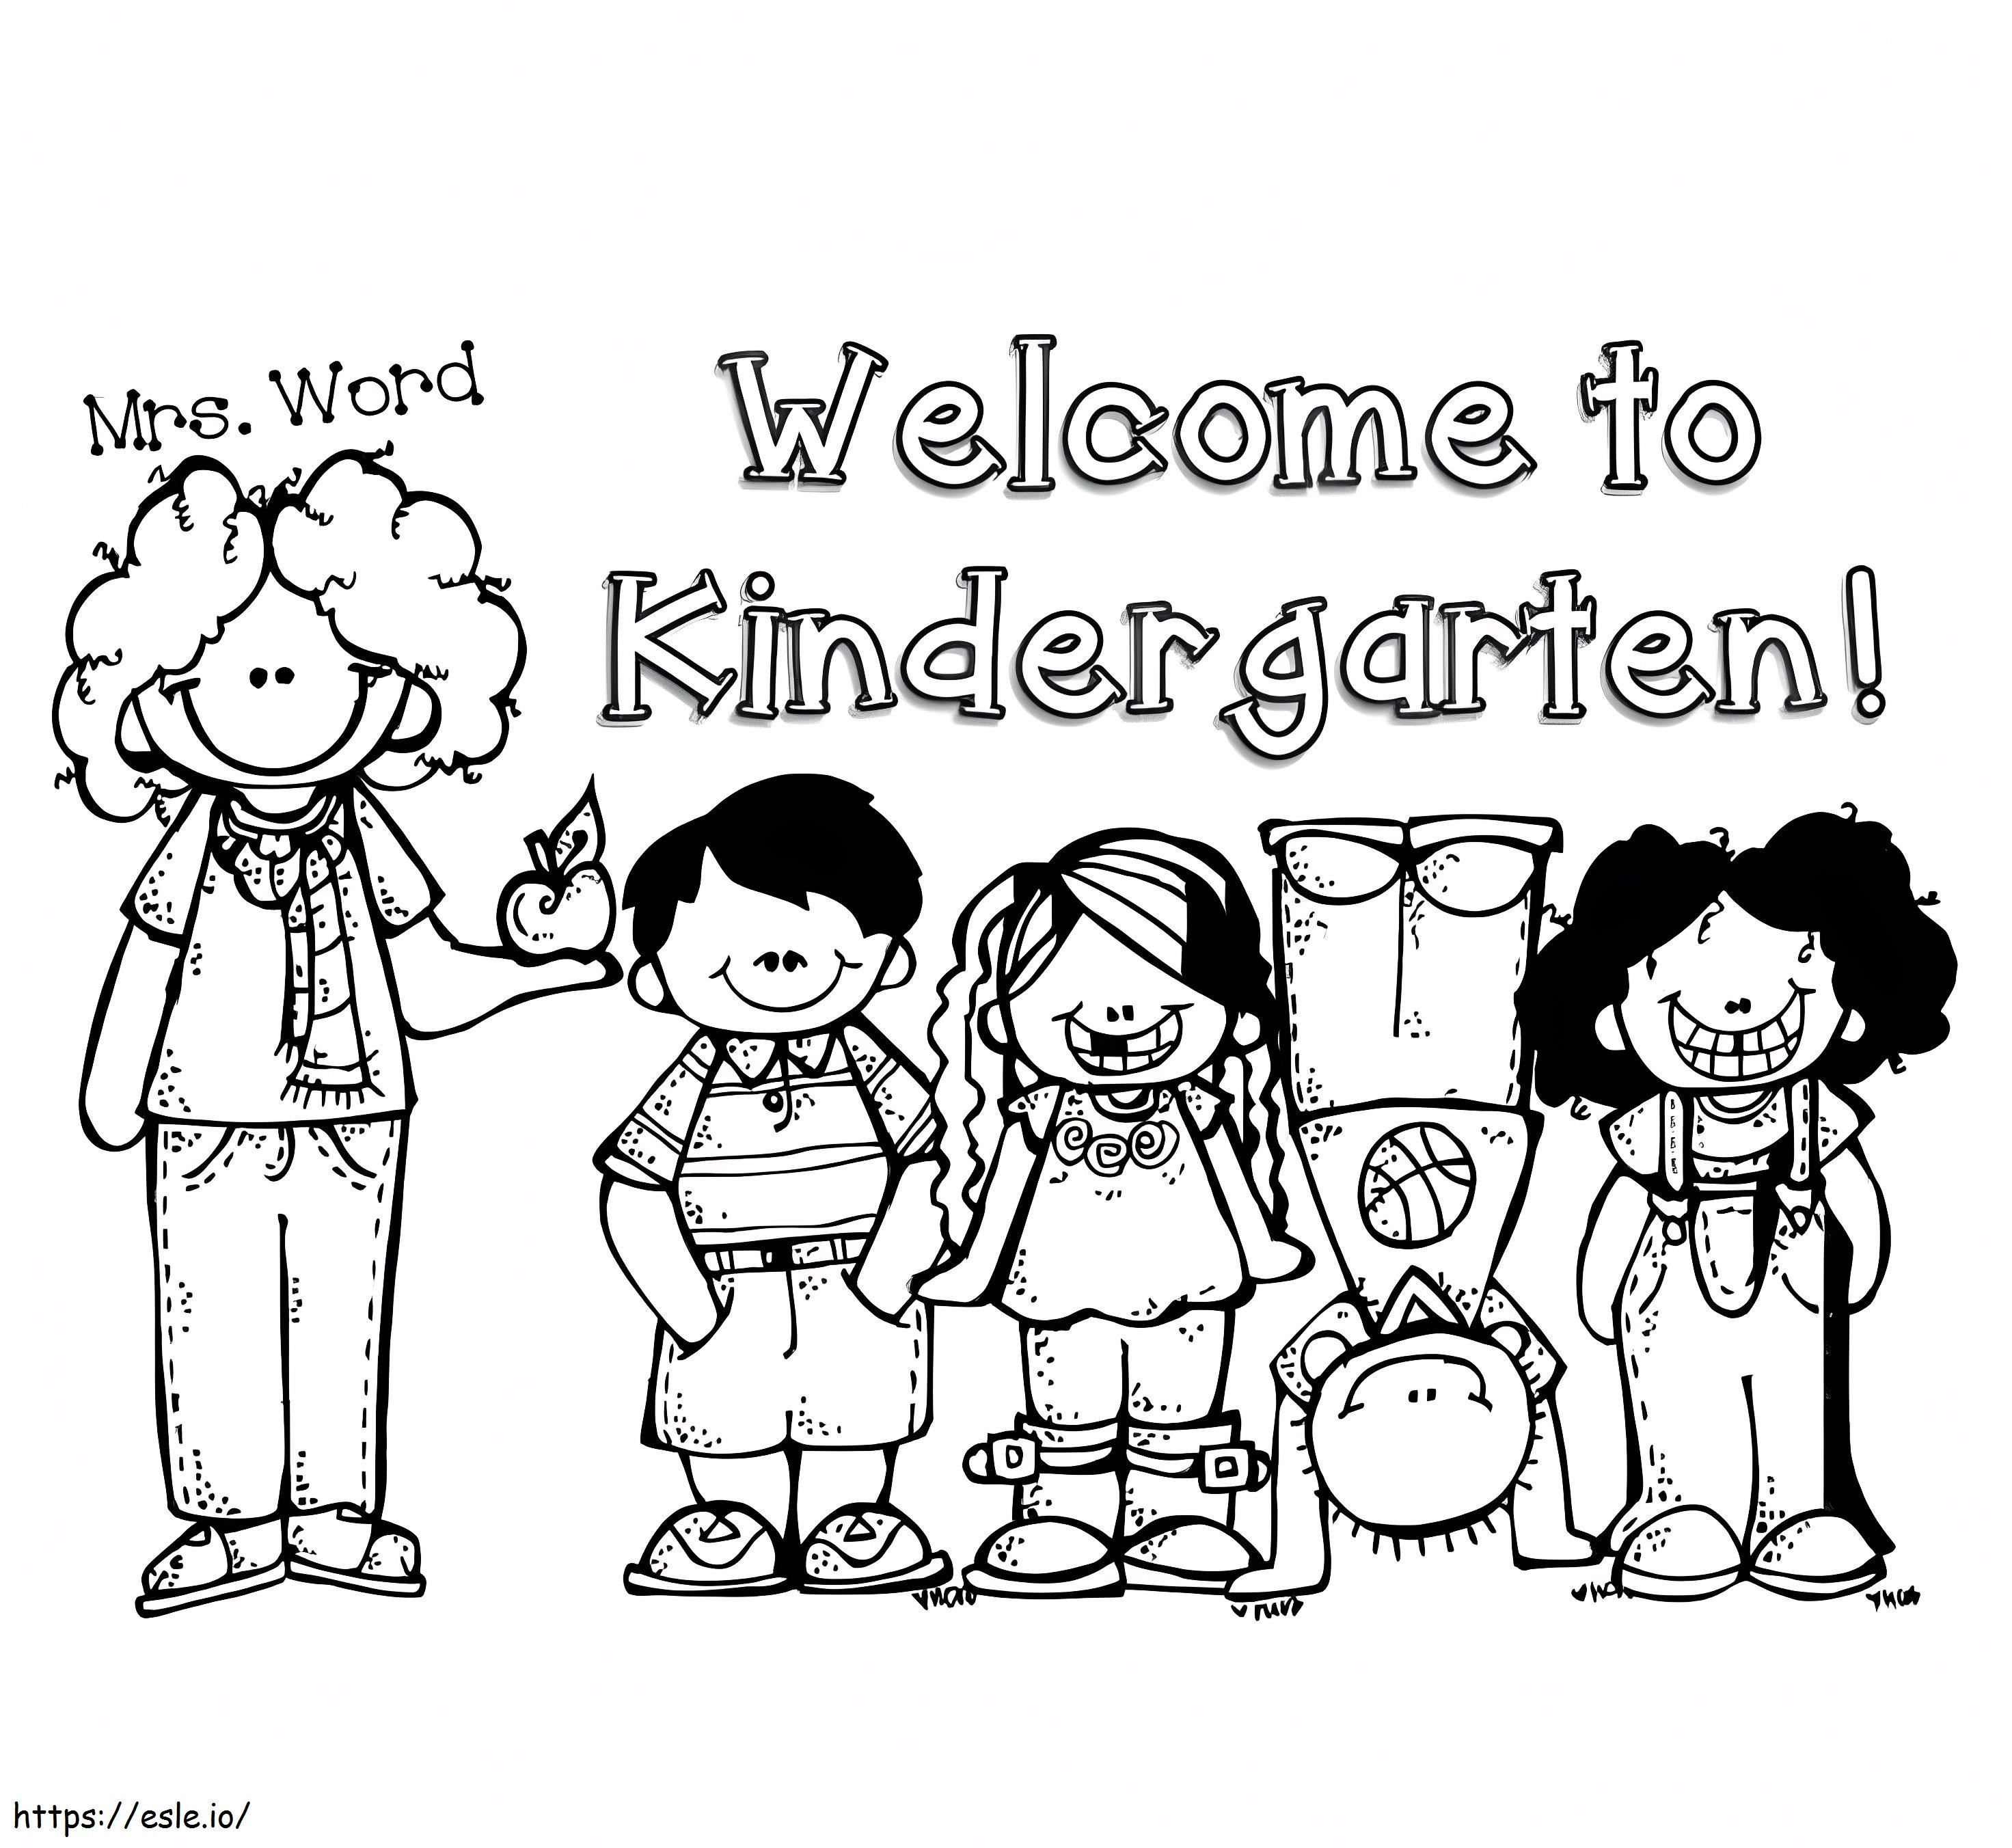 Willkommen im Kindergarten ausmalbilder